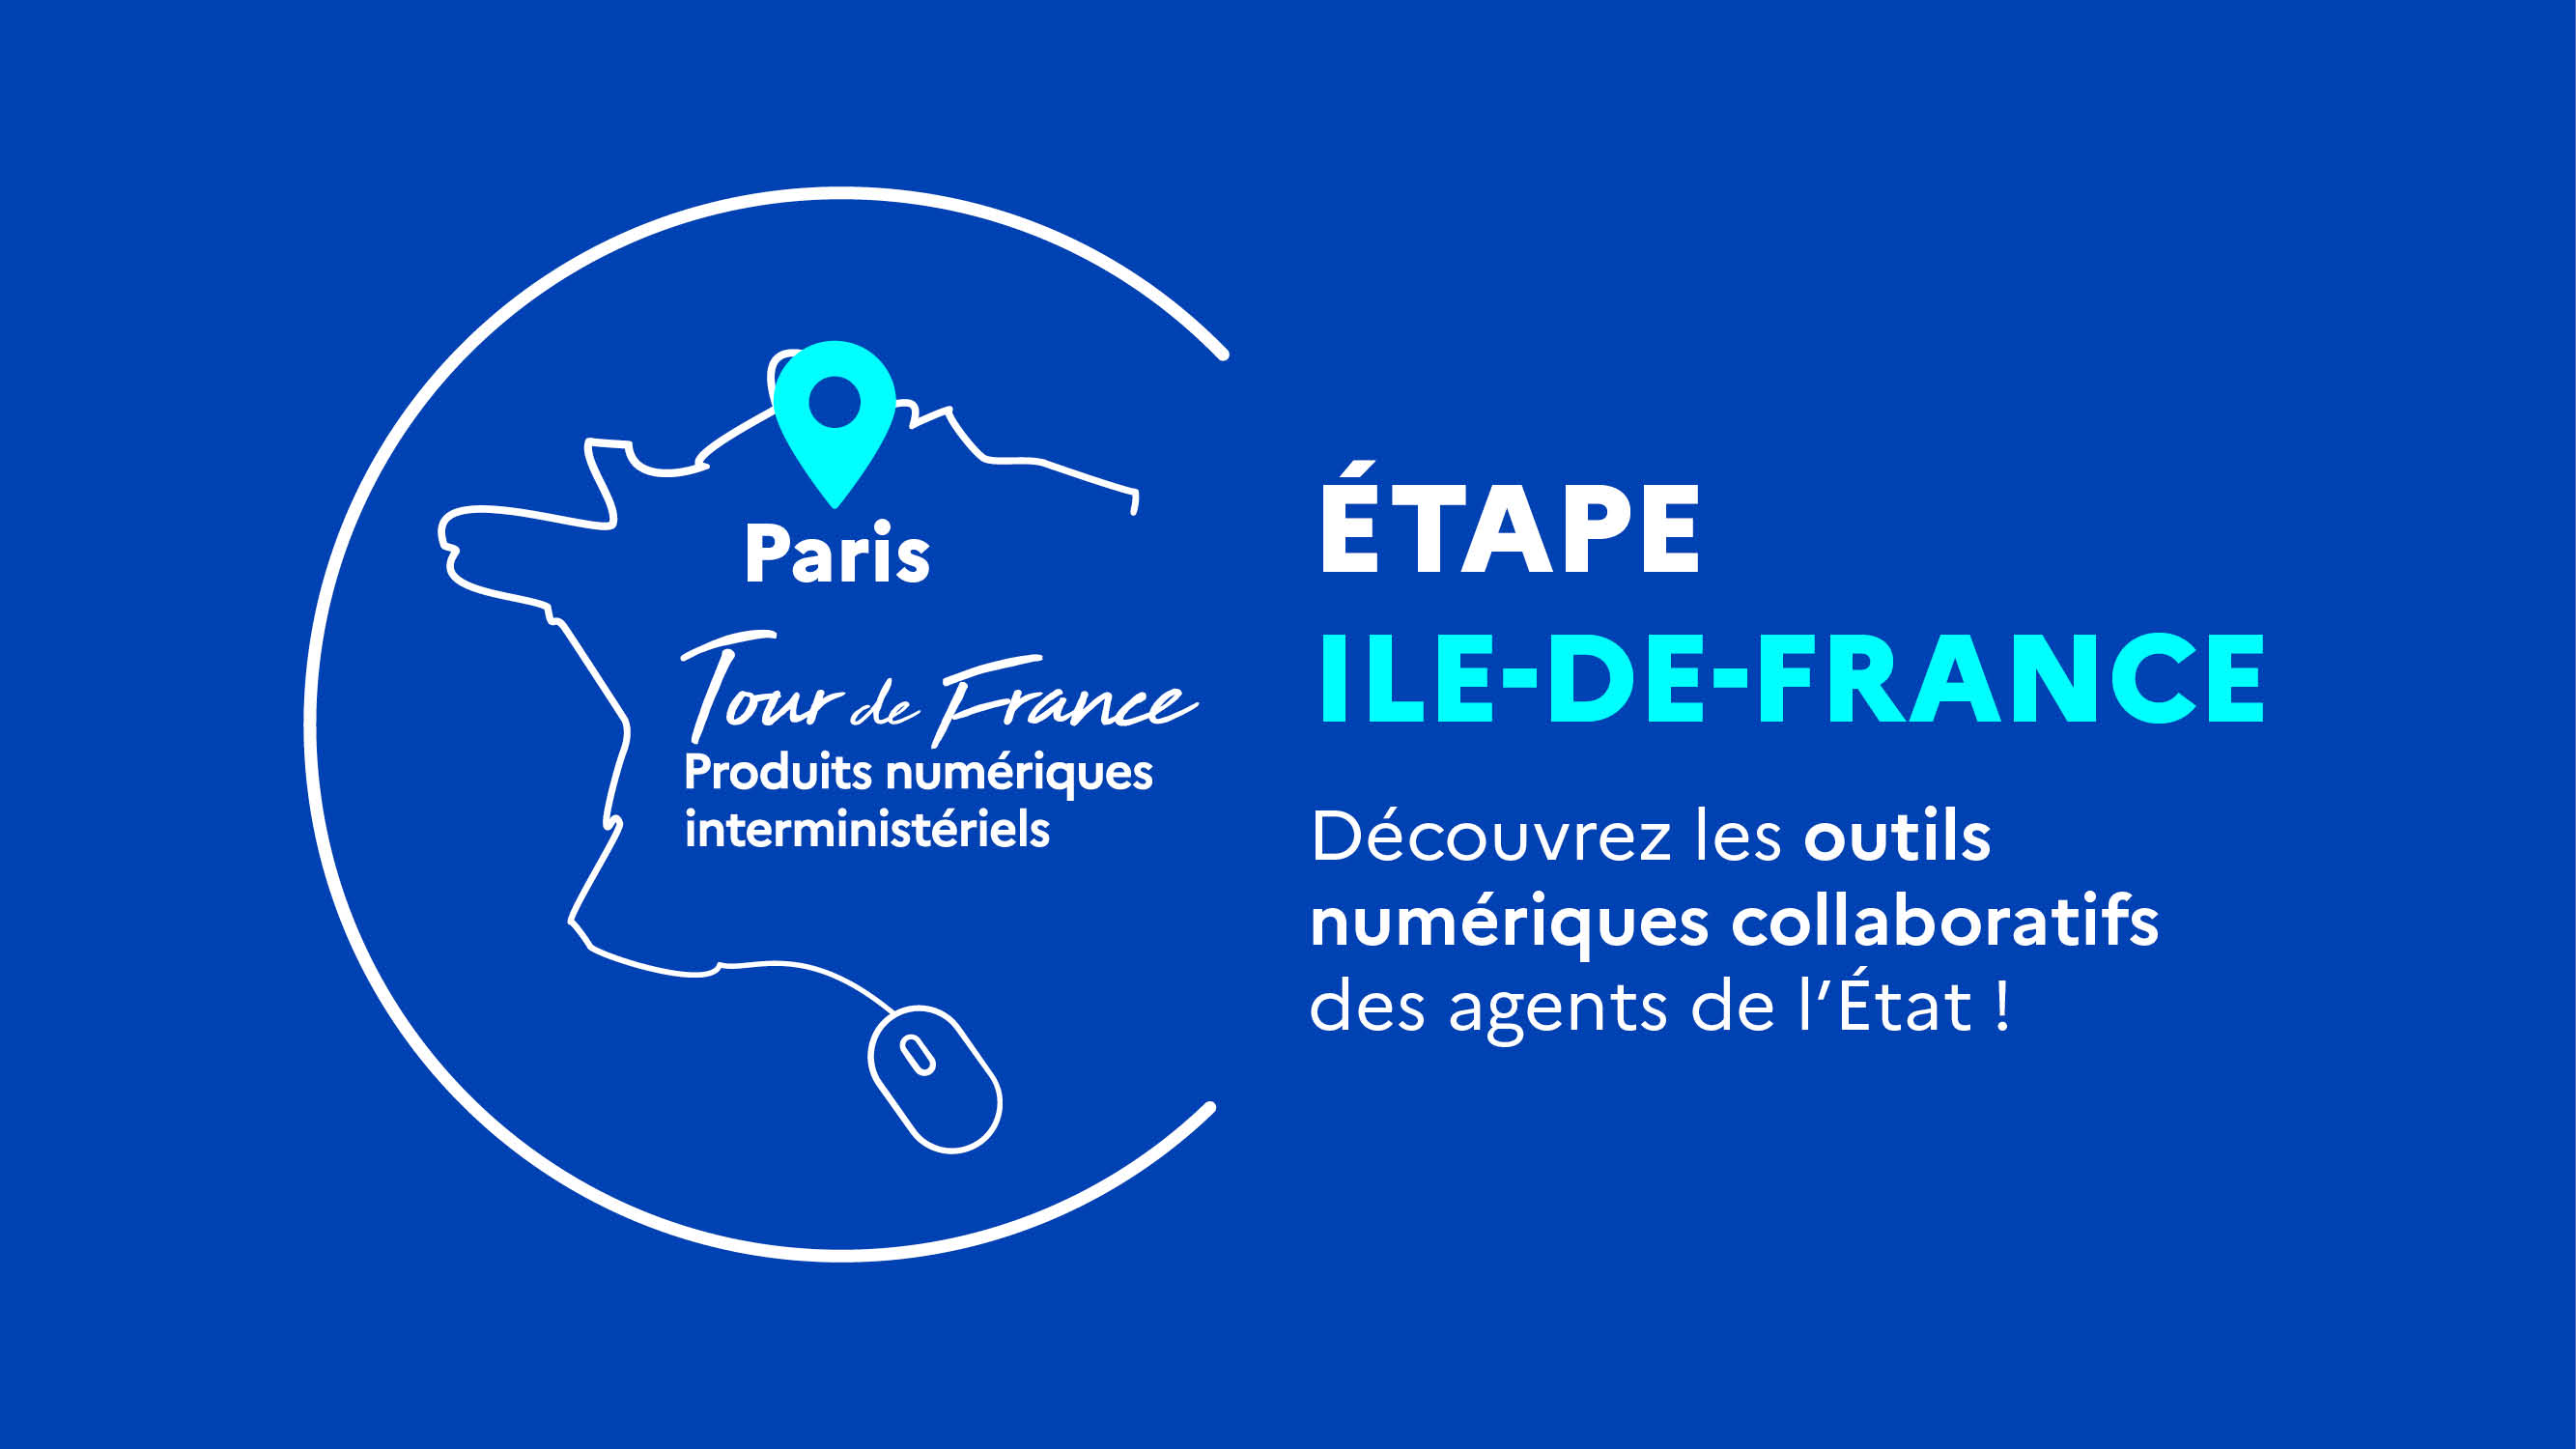 Tour de France des Produits numériques interministériels - Etape Île-de-France